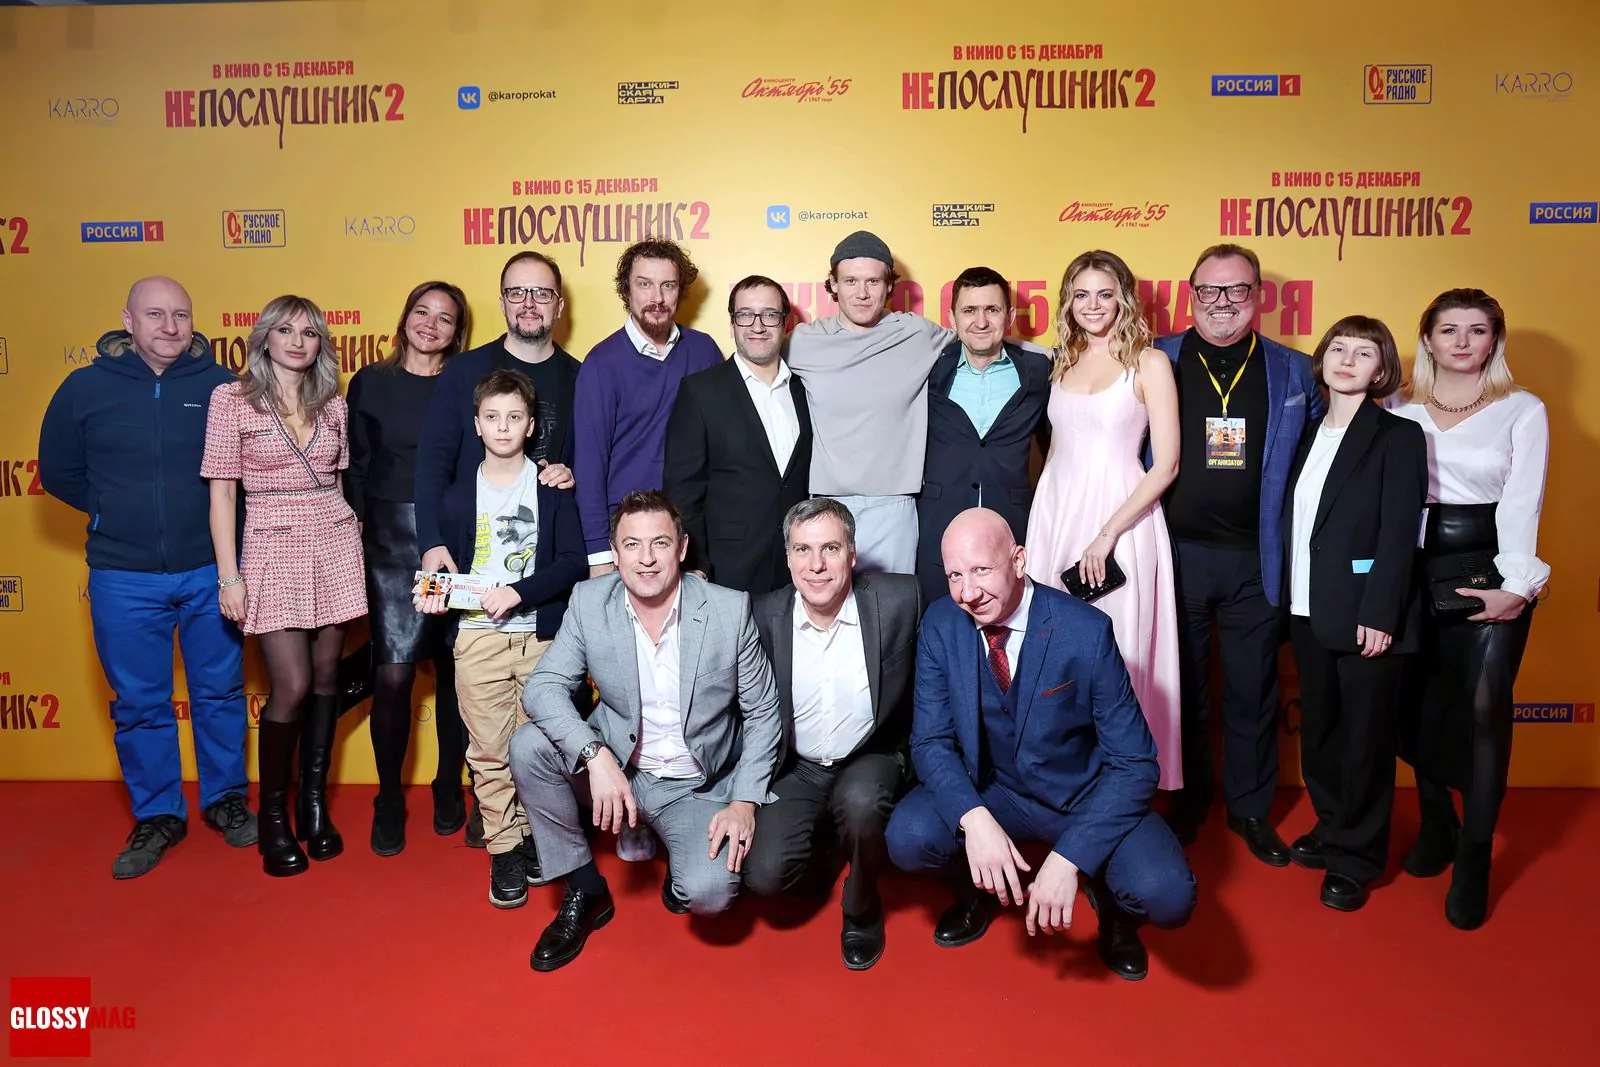 Творческая команда комедии «Непослушник 2» на московской премьере второй части комедии «Непослушник», 7 декабря 2022 г.